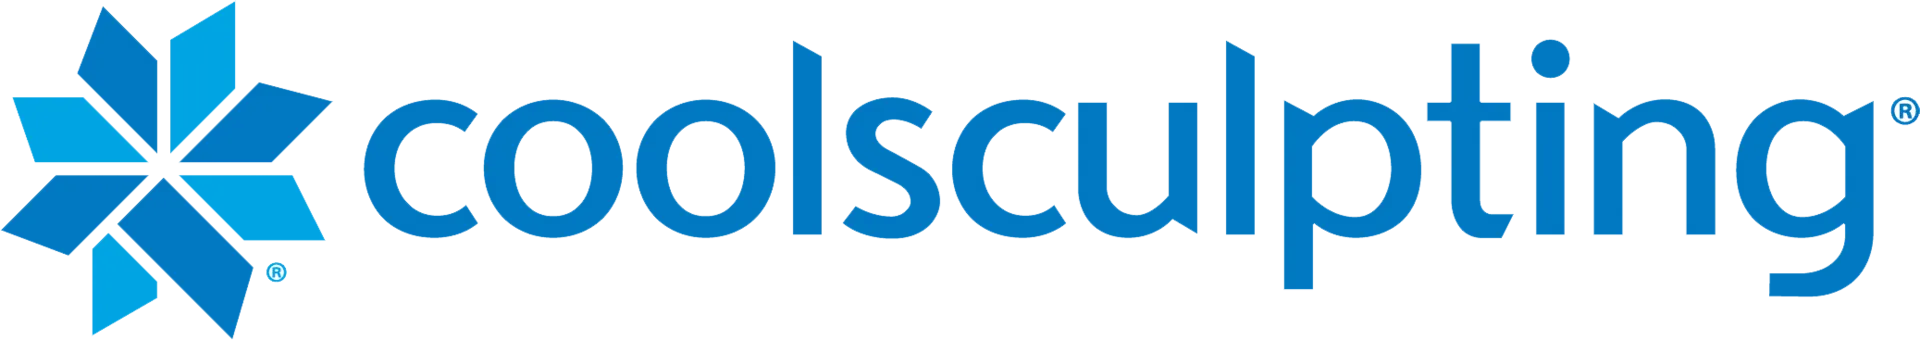 Coolsculpting Logo